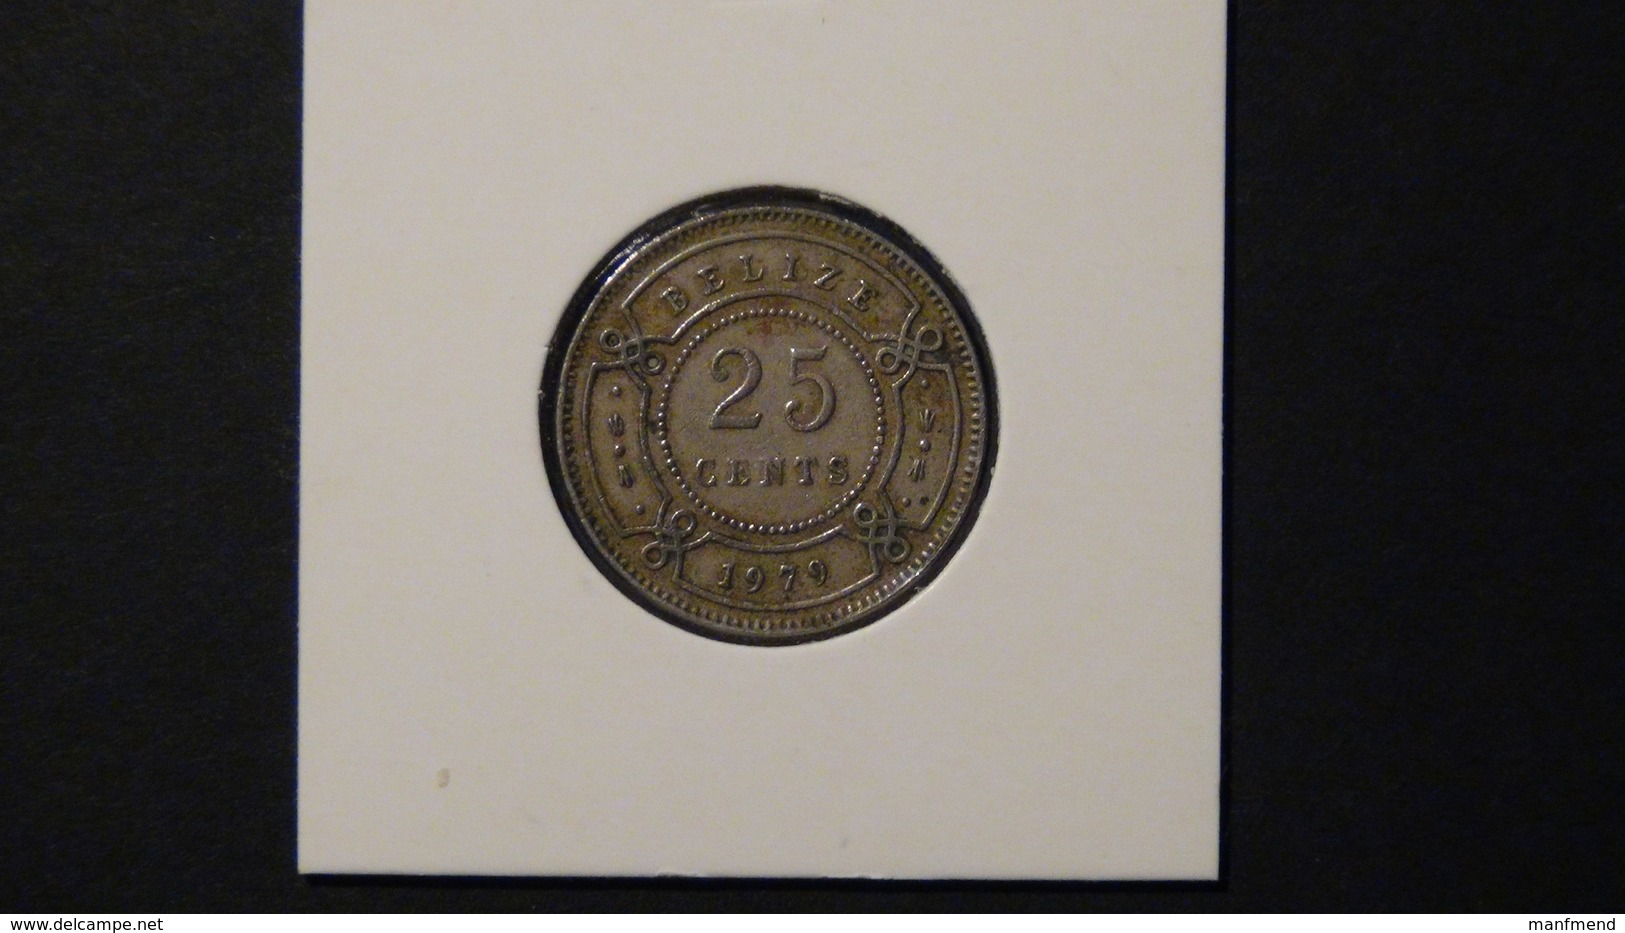 Belize - 1979 - 25 Cents - KM 36 - VF - Belize